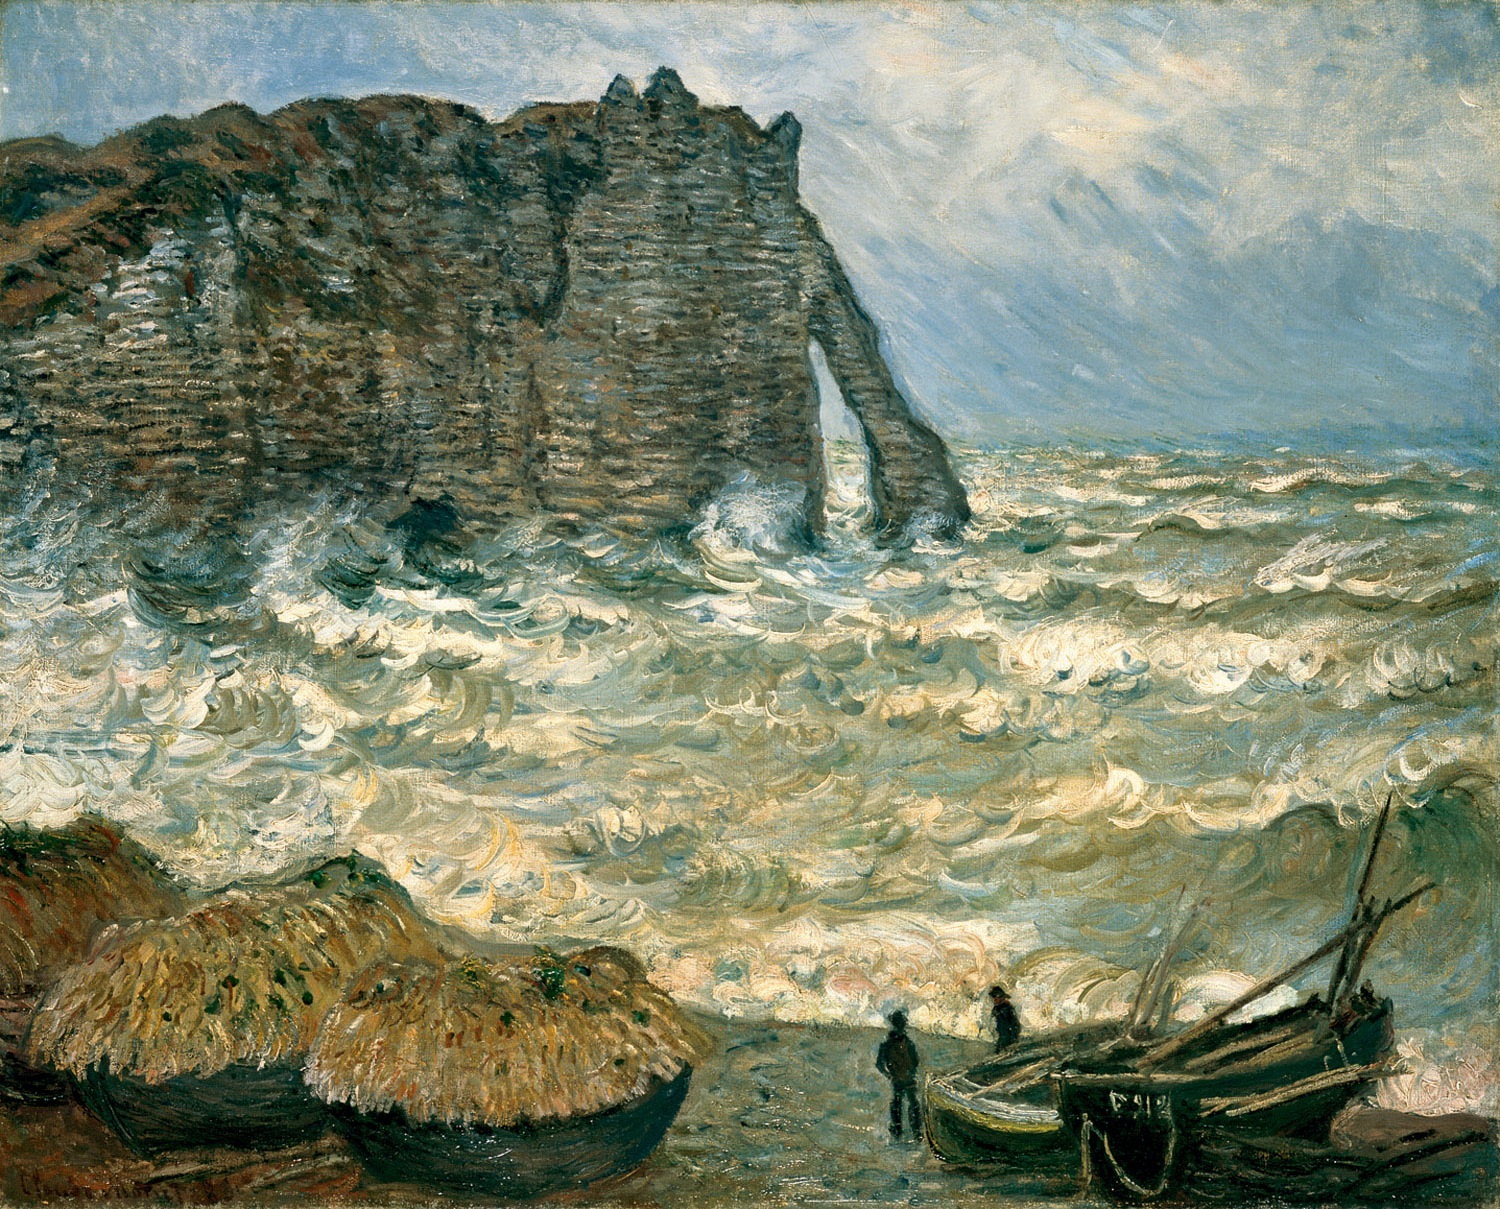 에트리타의 거친 바다 by Claude Monet - 1883 - 81x 100 cm 